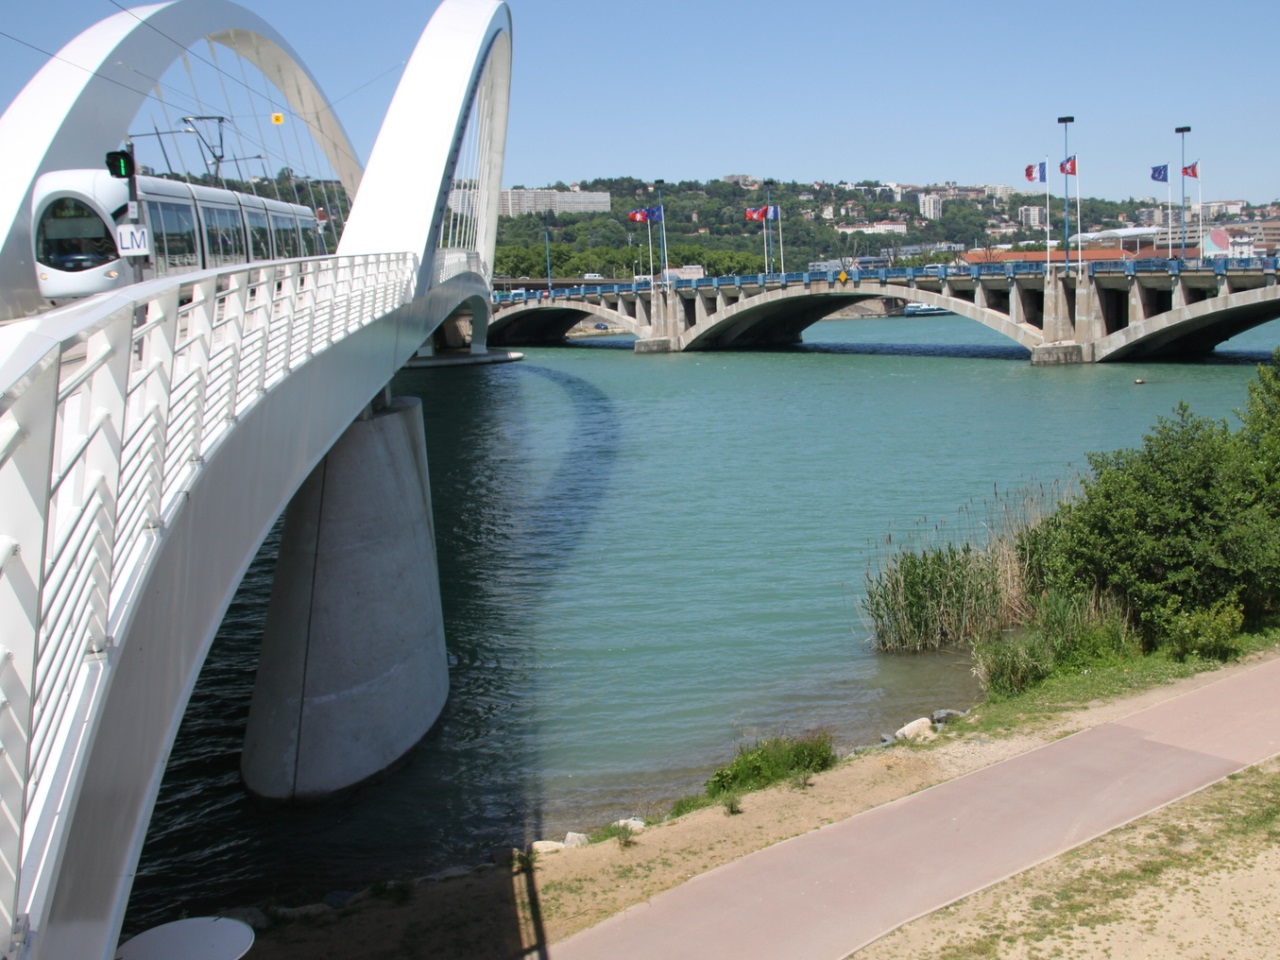 Le corps a été retrouvé dans le Rhône près du pont Raymond-Barre - LyonMag